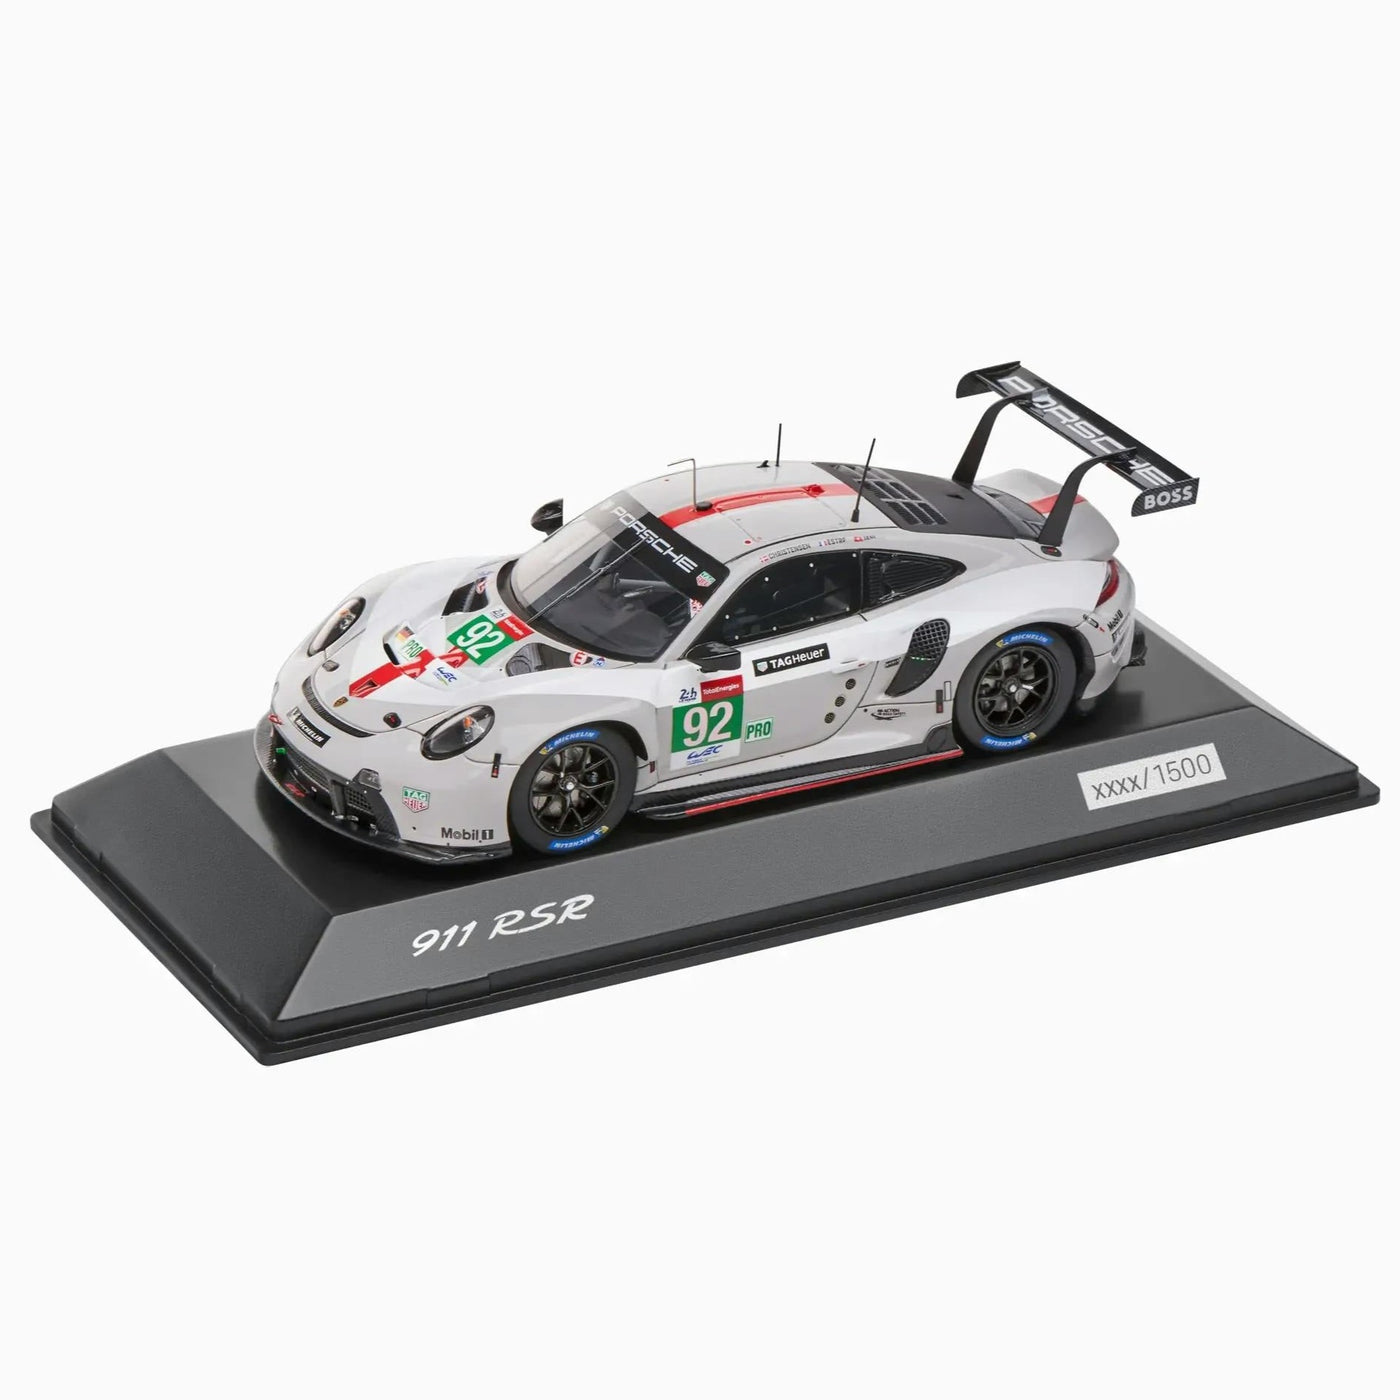 Porsche 911 RSR #92 24h Le Mans 2021 (991) Model Car 1:43 - Grey